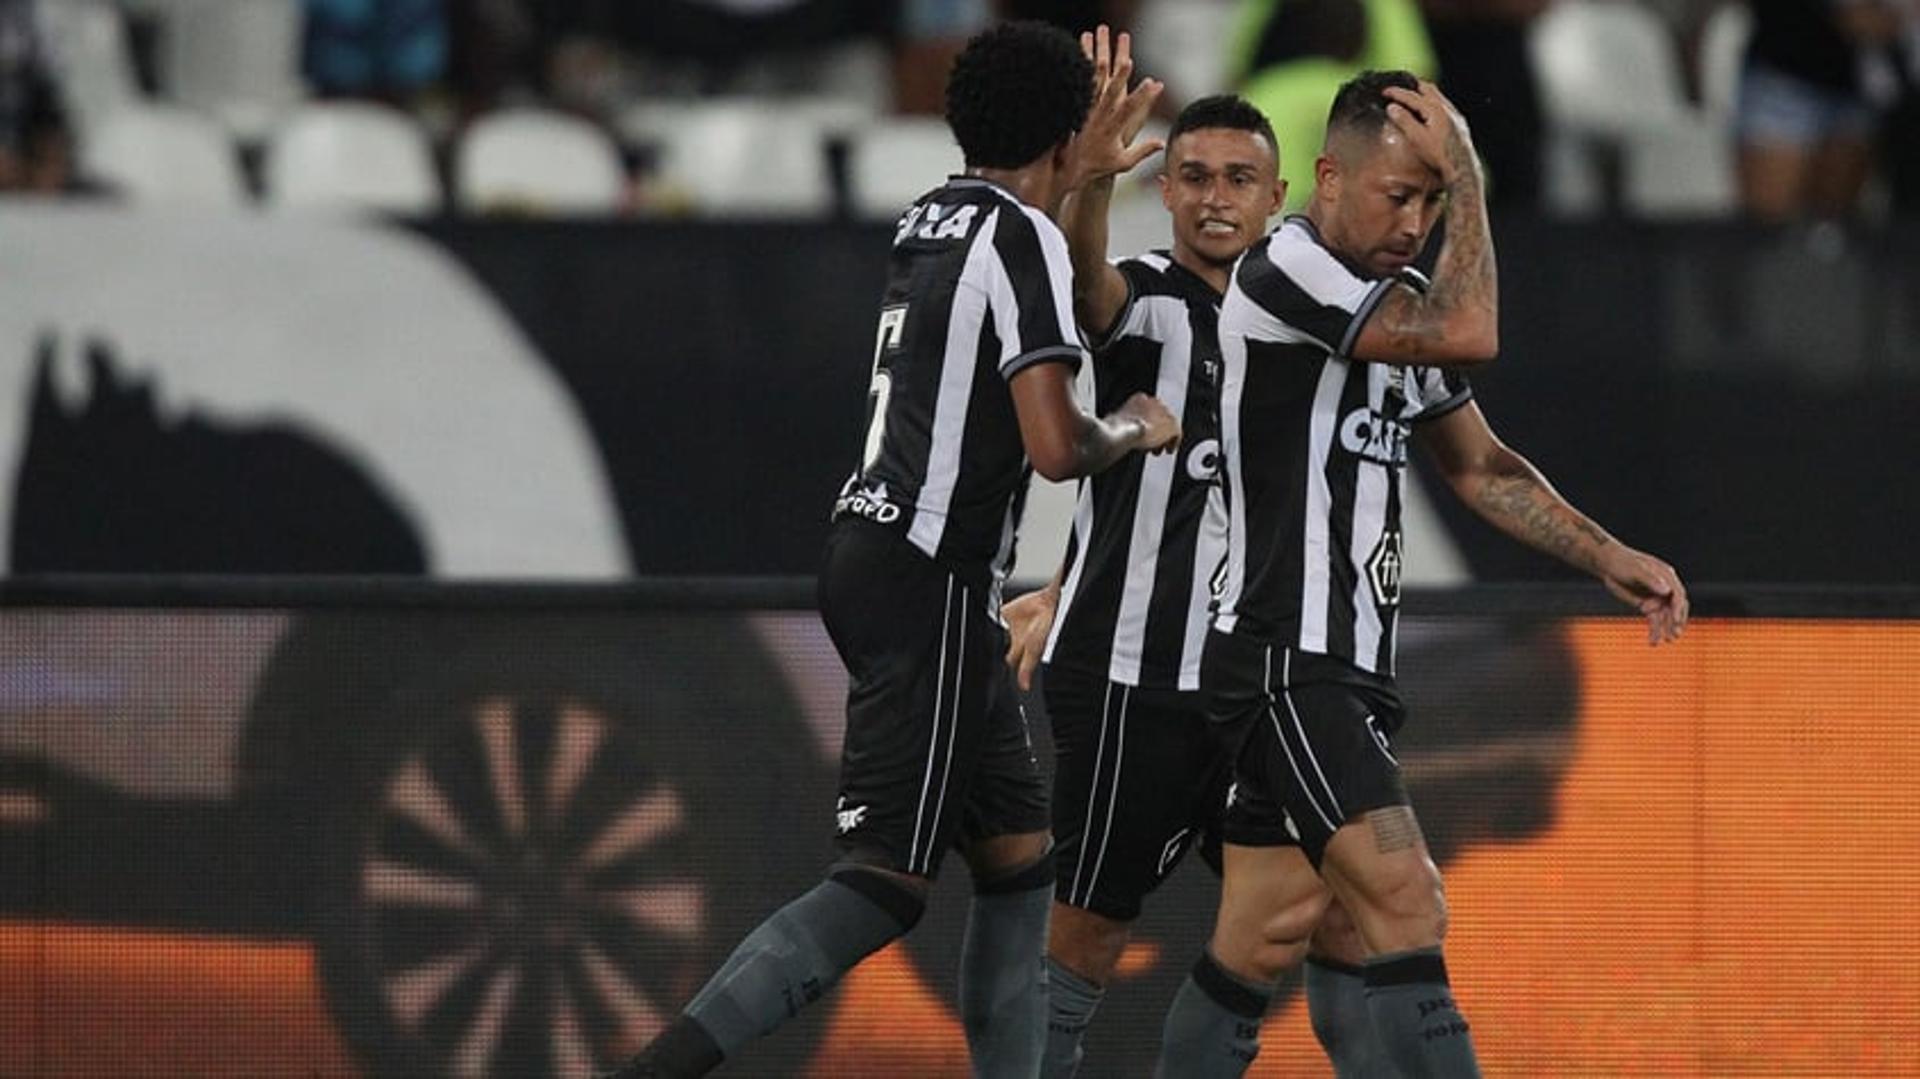 O Botafogo venceu o Cuiabá por 3 a 0, no Estádio Nilton Santos, e avançou à terceira fase da Copa do Brasil. Erik (2) e Rodrigo Pimpão marcaram os gols do triunfo alvinegro. Confira, a seguir, as notas do LANCE! (João Vitor Castanheira -&nbsp;joaovitor@lancenet.com.br)